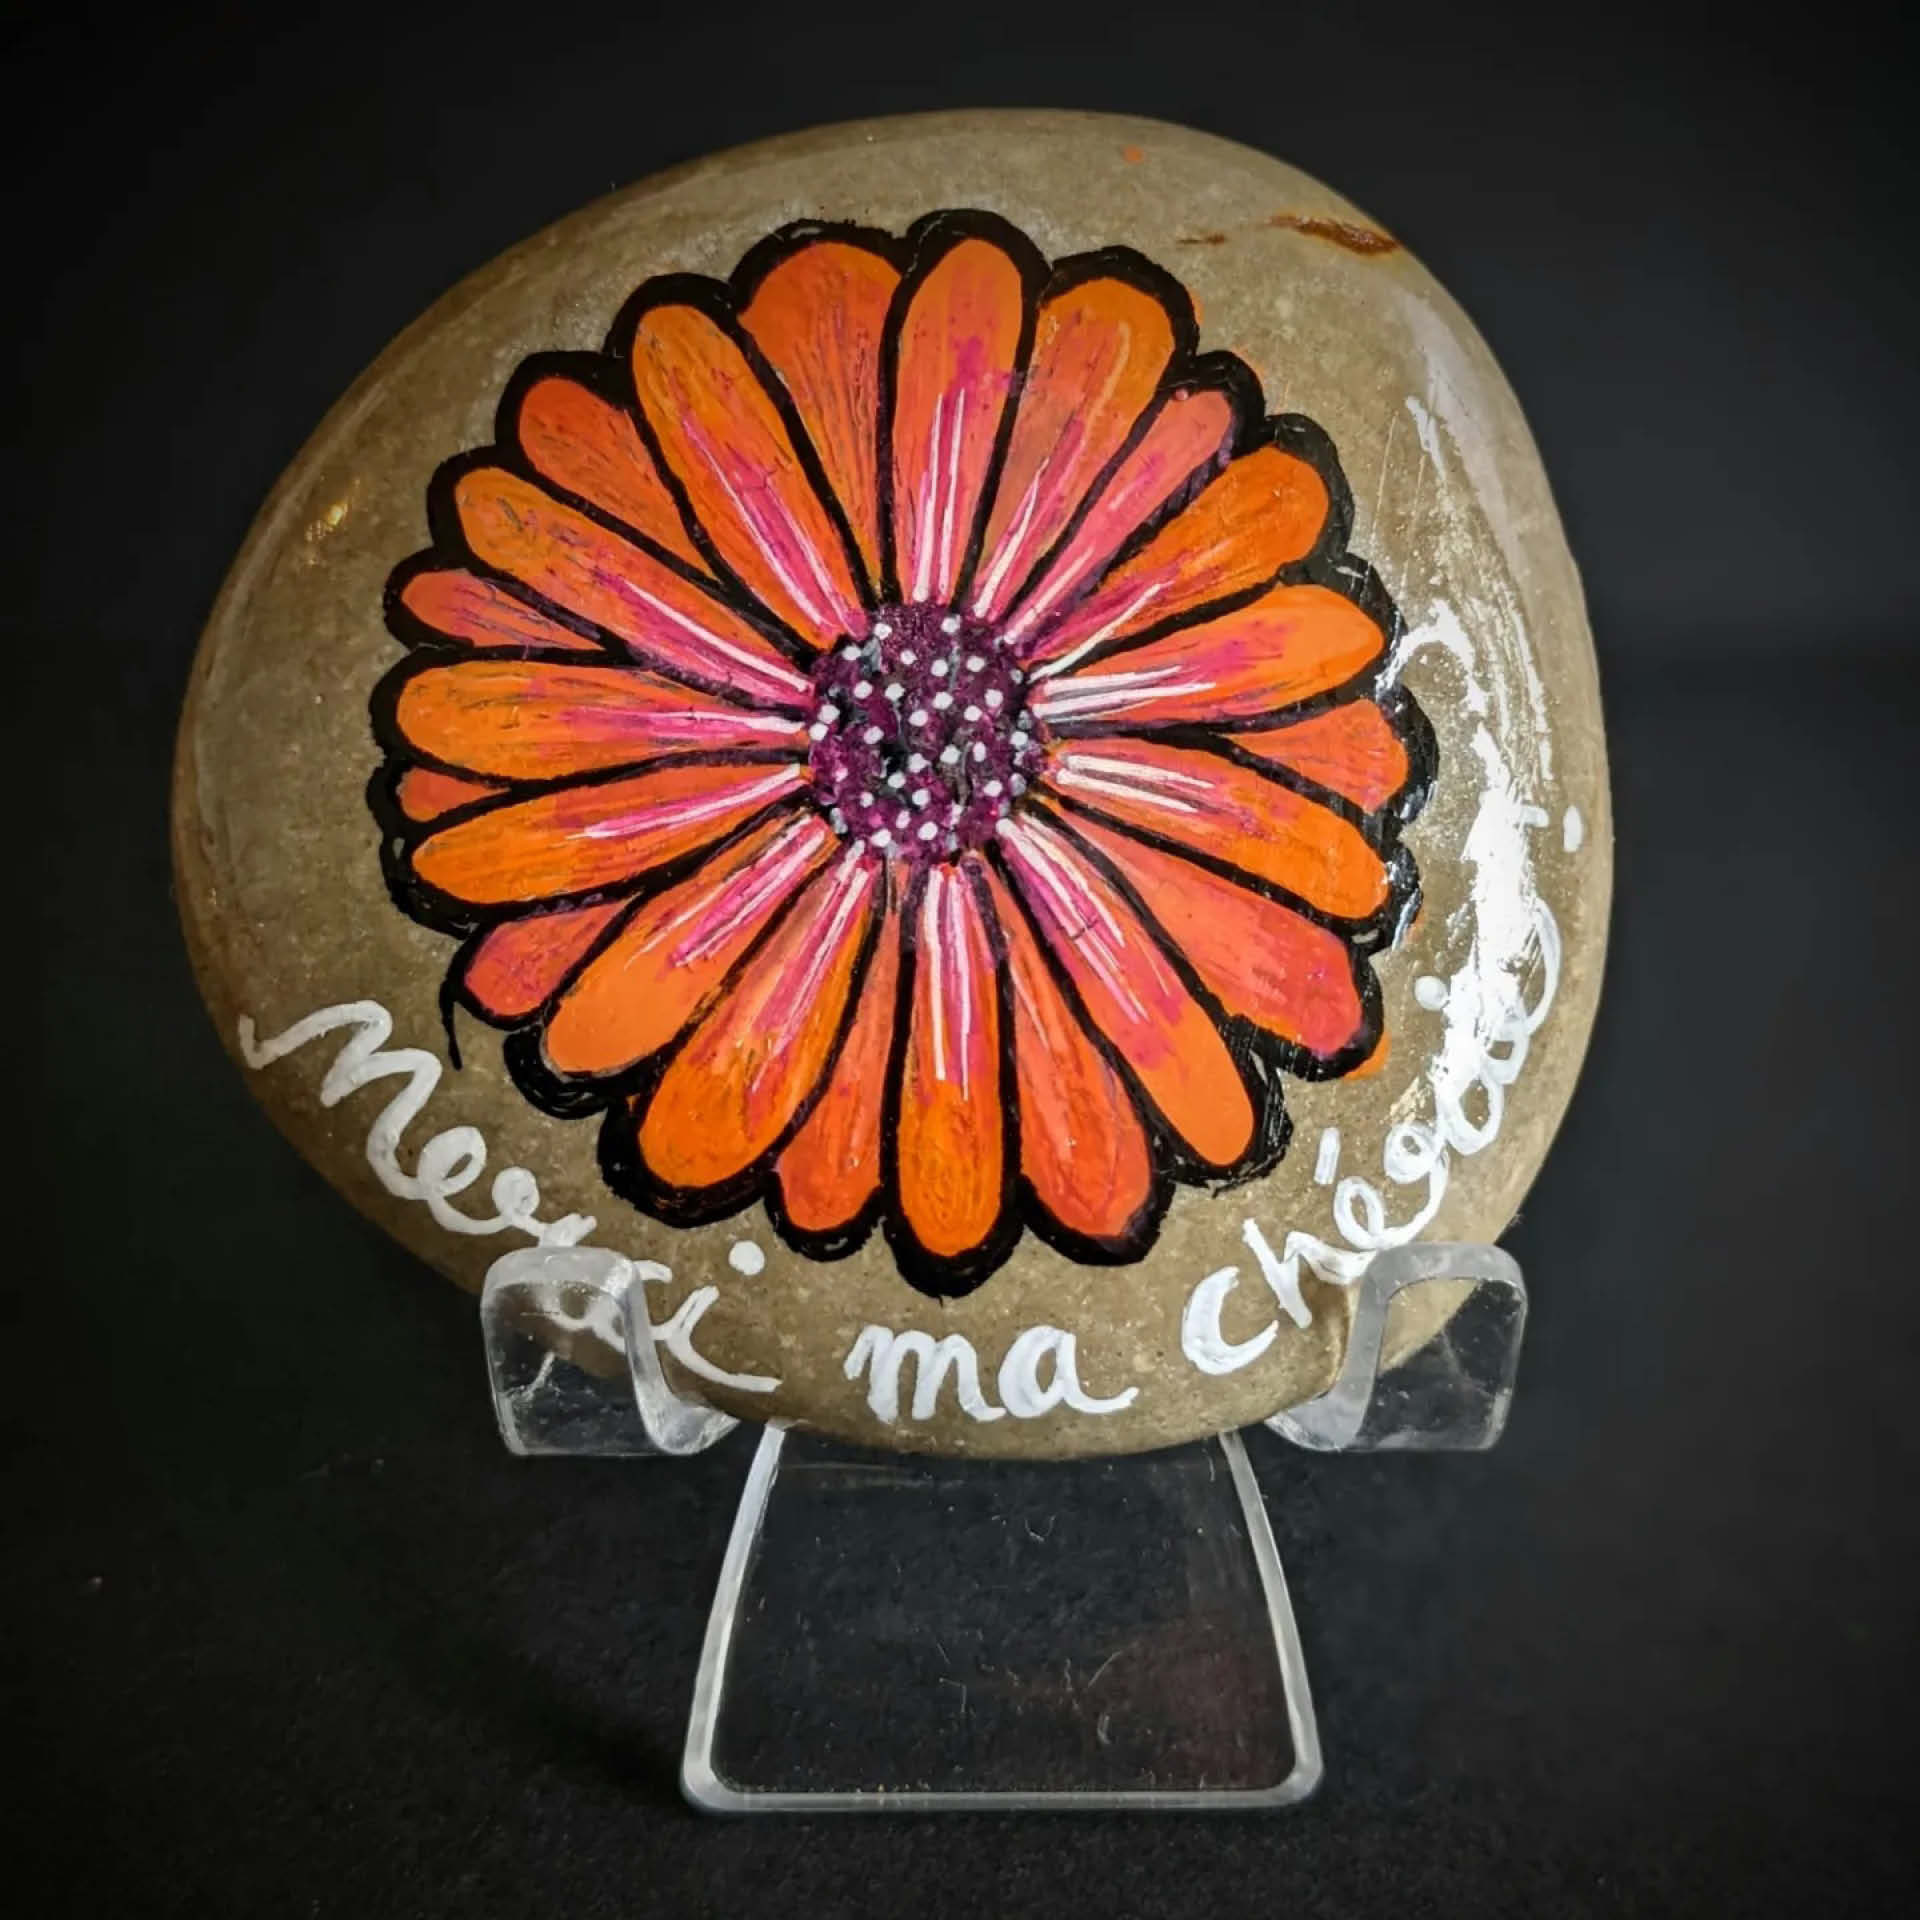 Galet naturel peint avec une fleur orange style marguerite. On peut lire sous la fleur "Merci ma chérie"